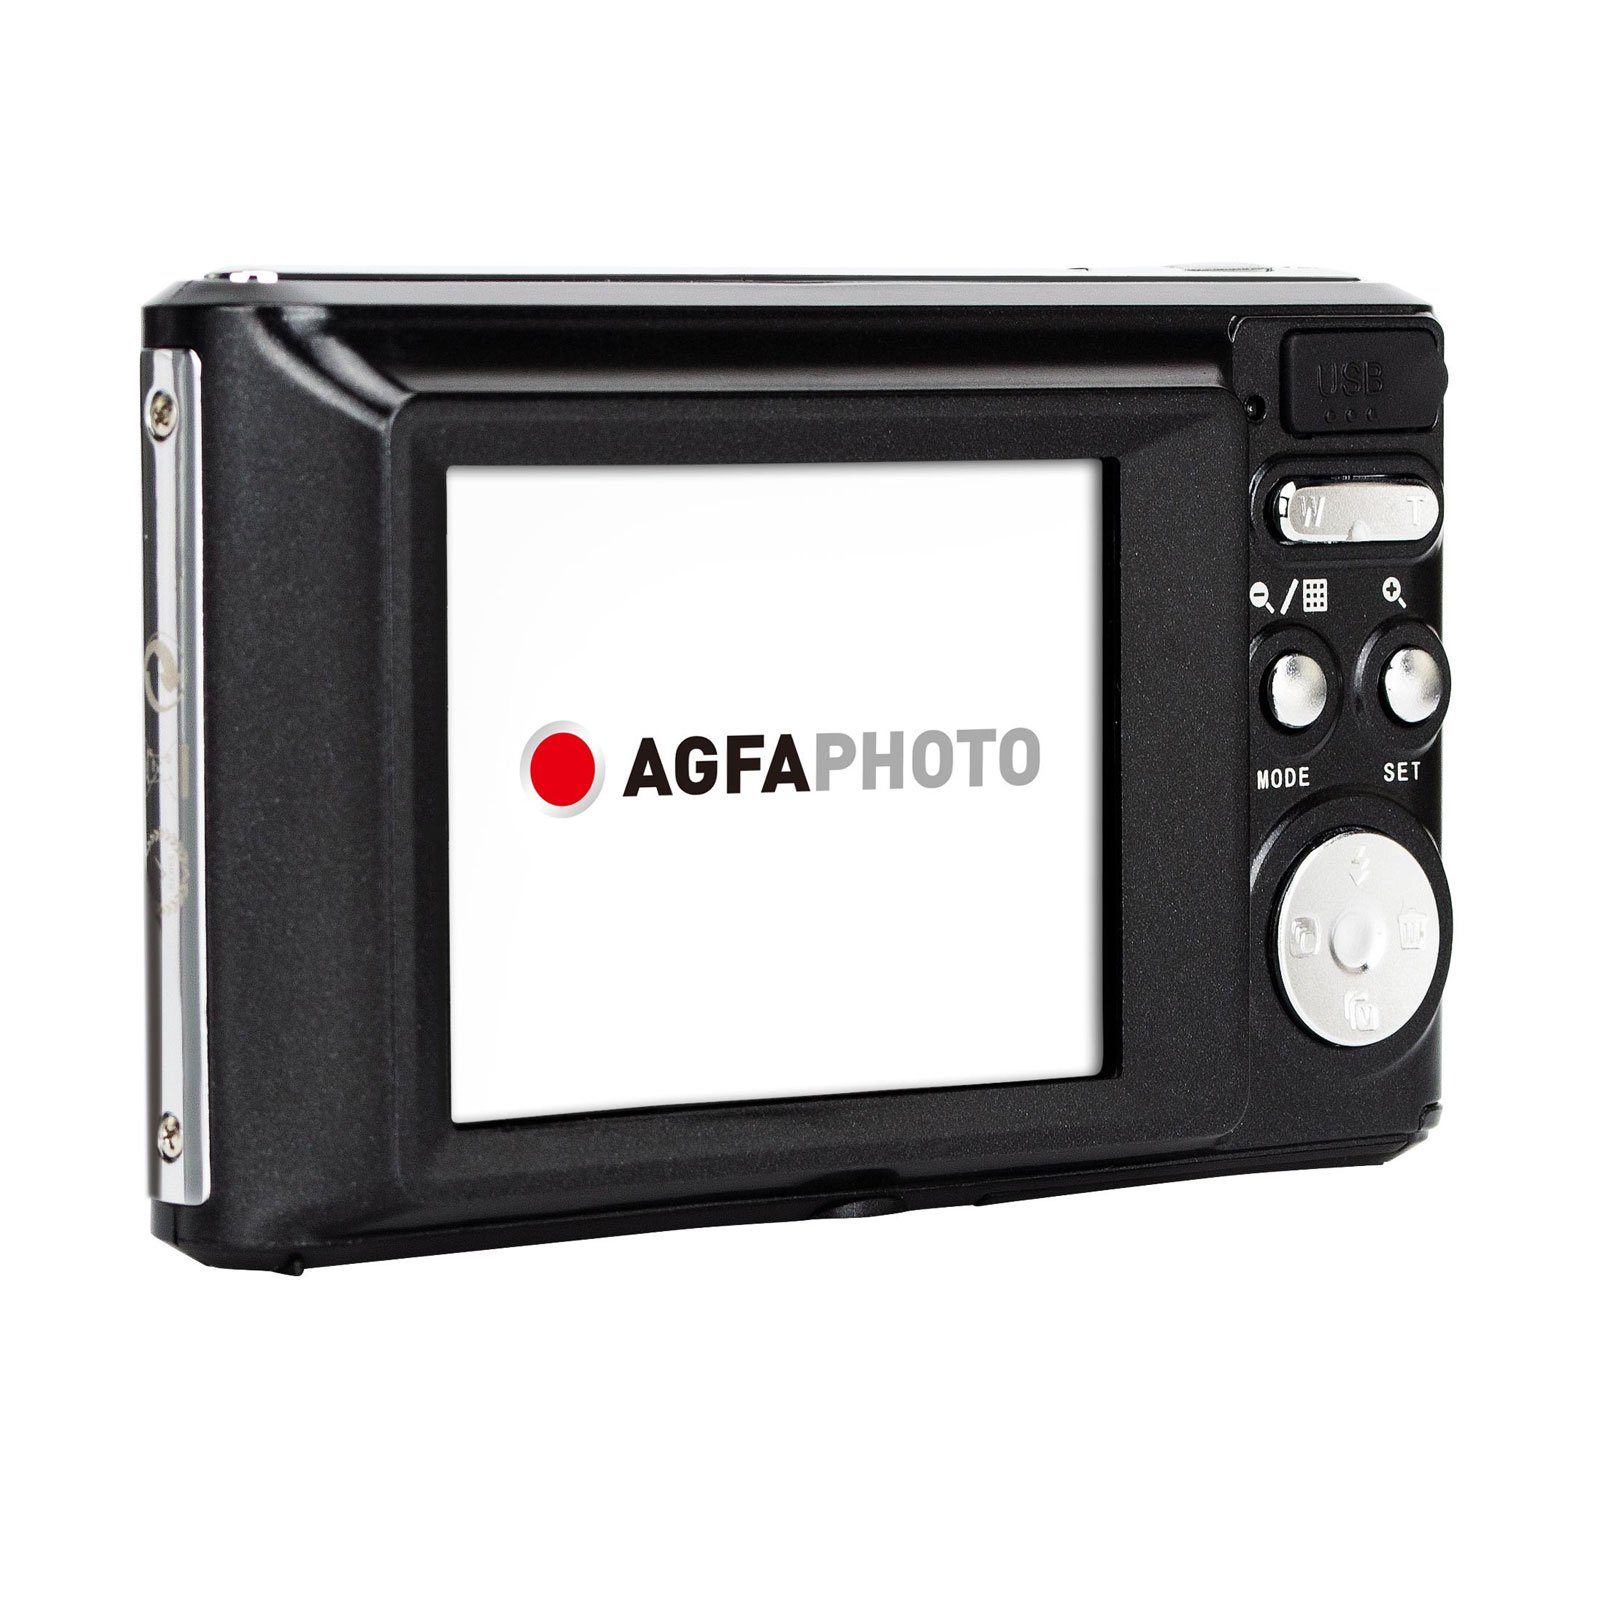 Schwarz DC5500 m, 720p Kompaktkamera 1,2 AGFA High-Definition-Videoaufnahme) (Stoßfest bis zu